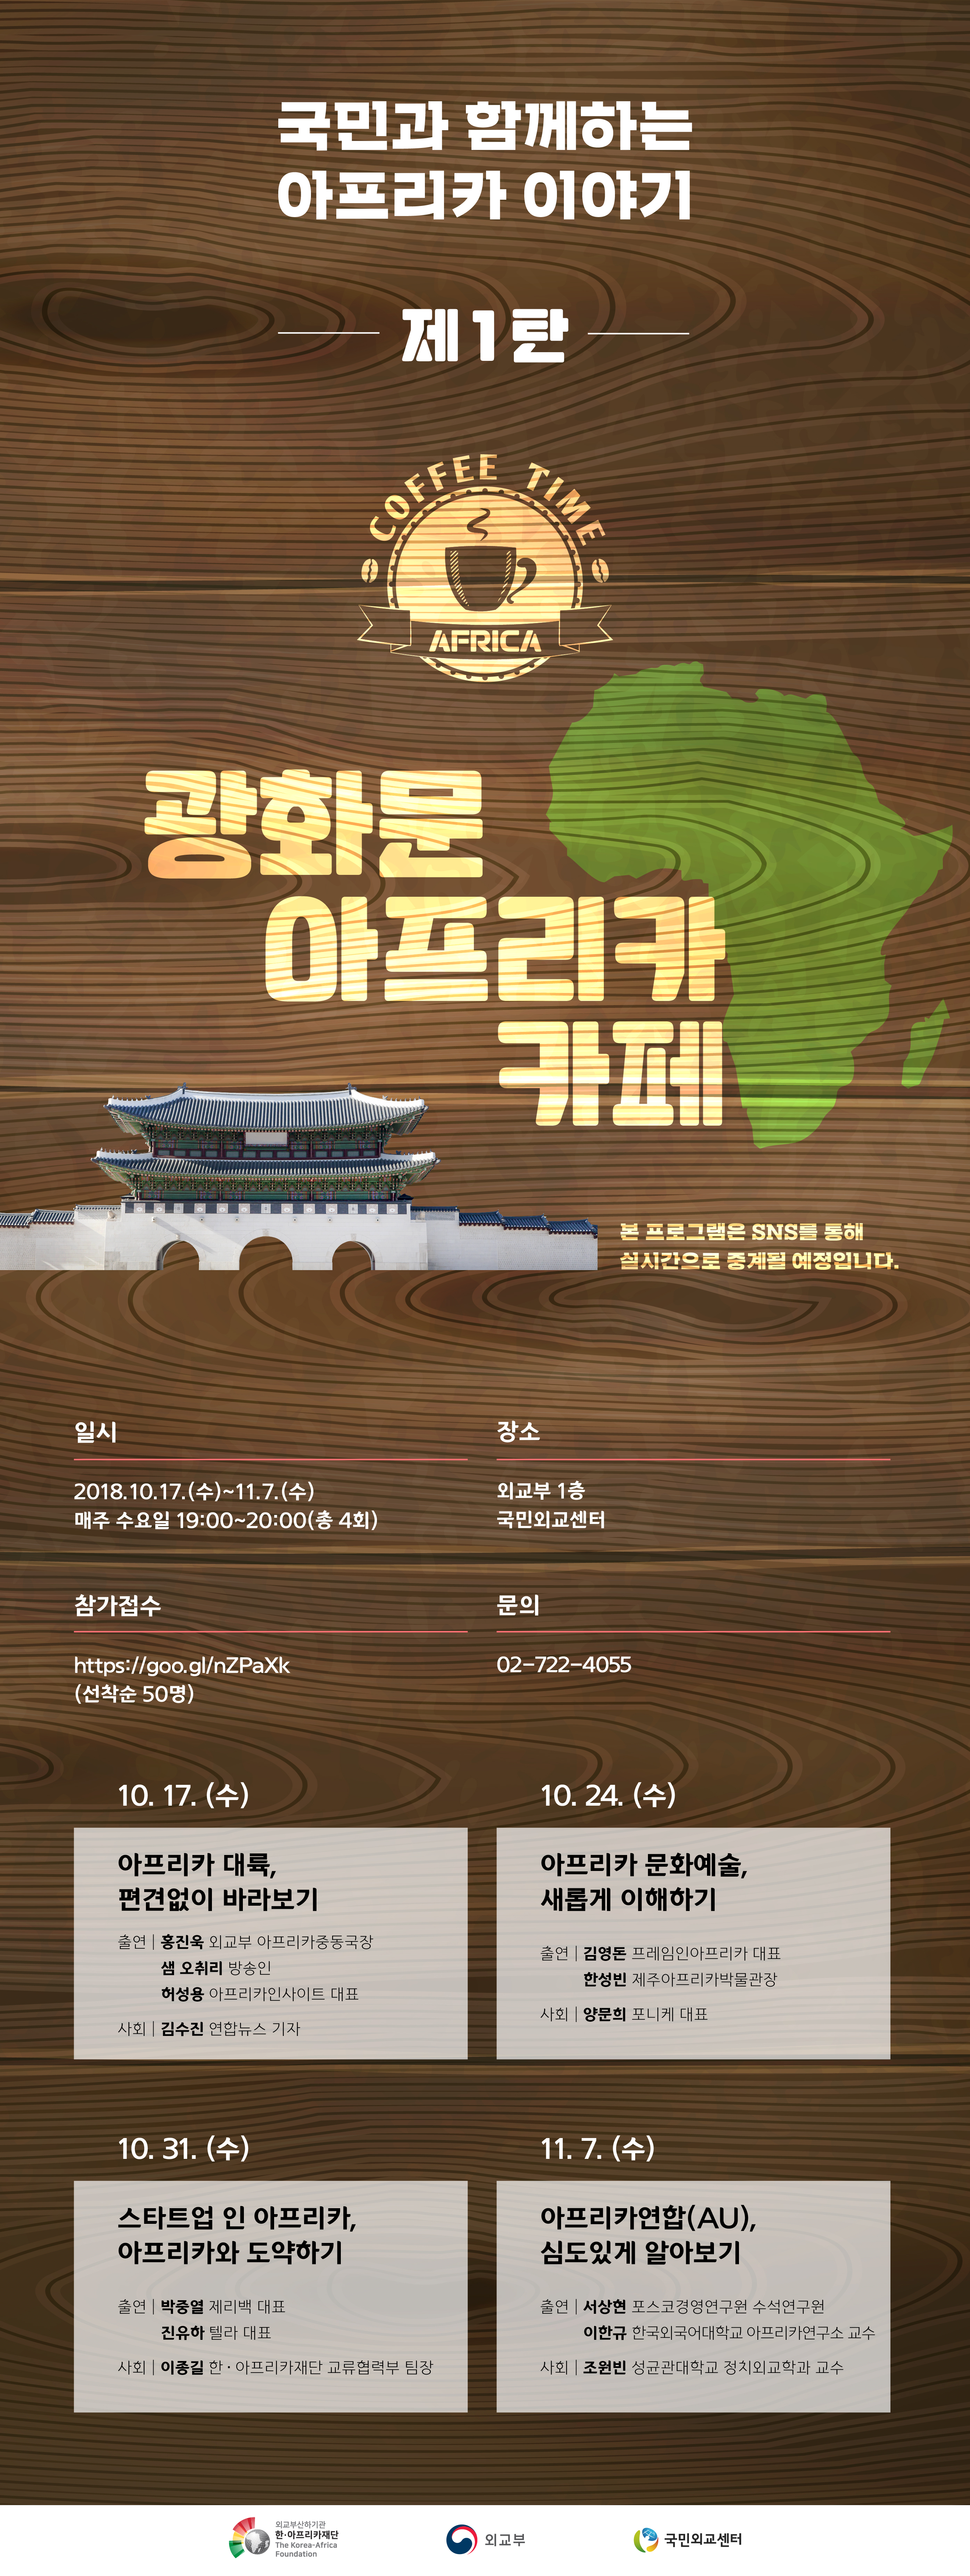 '광화문 아프리카 카페' 개최 (10.17.)